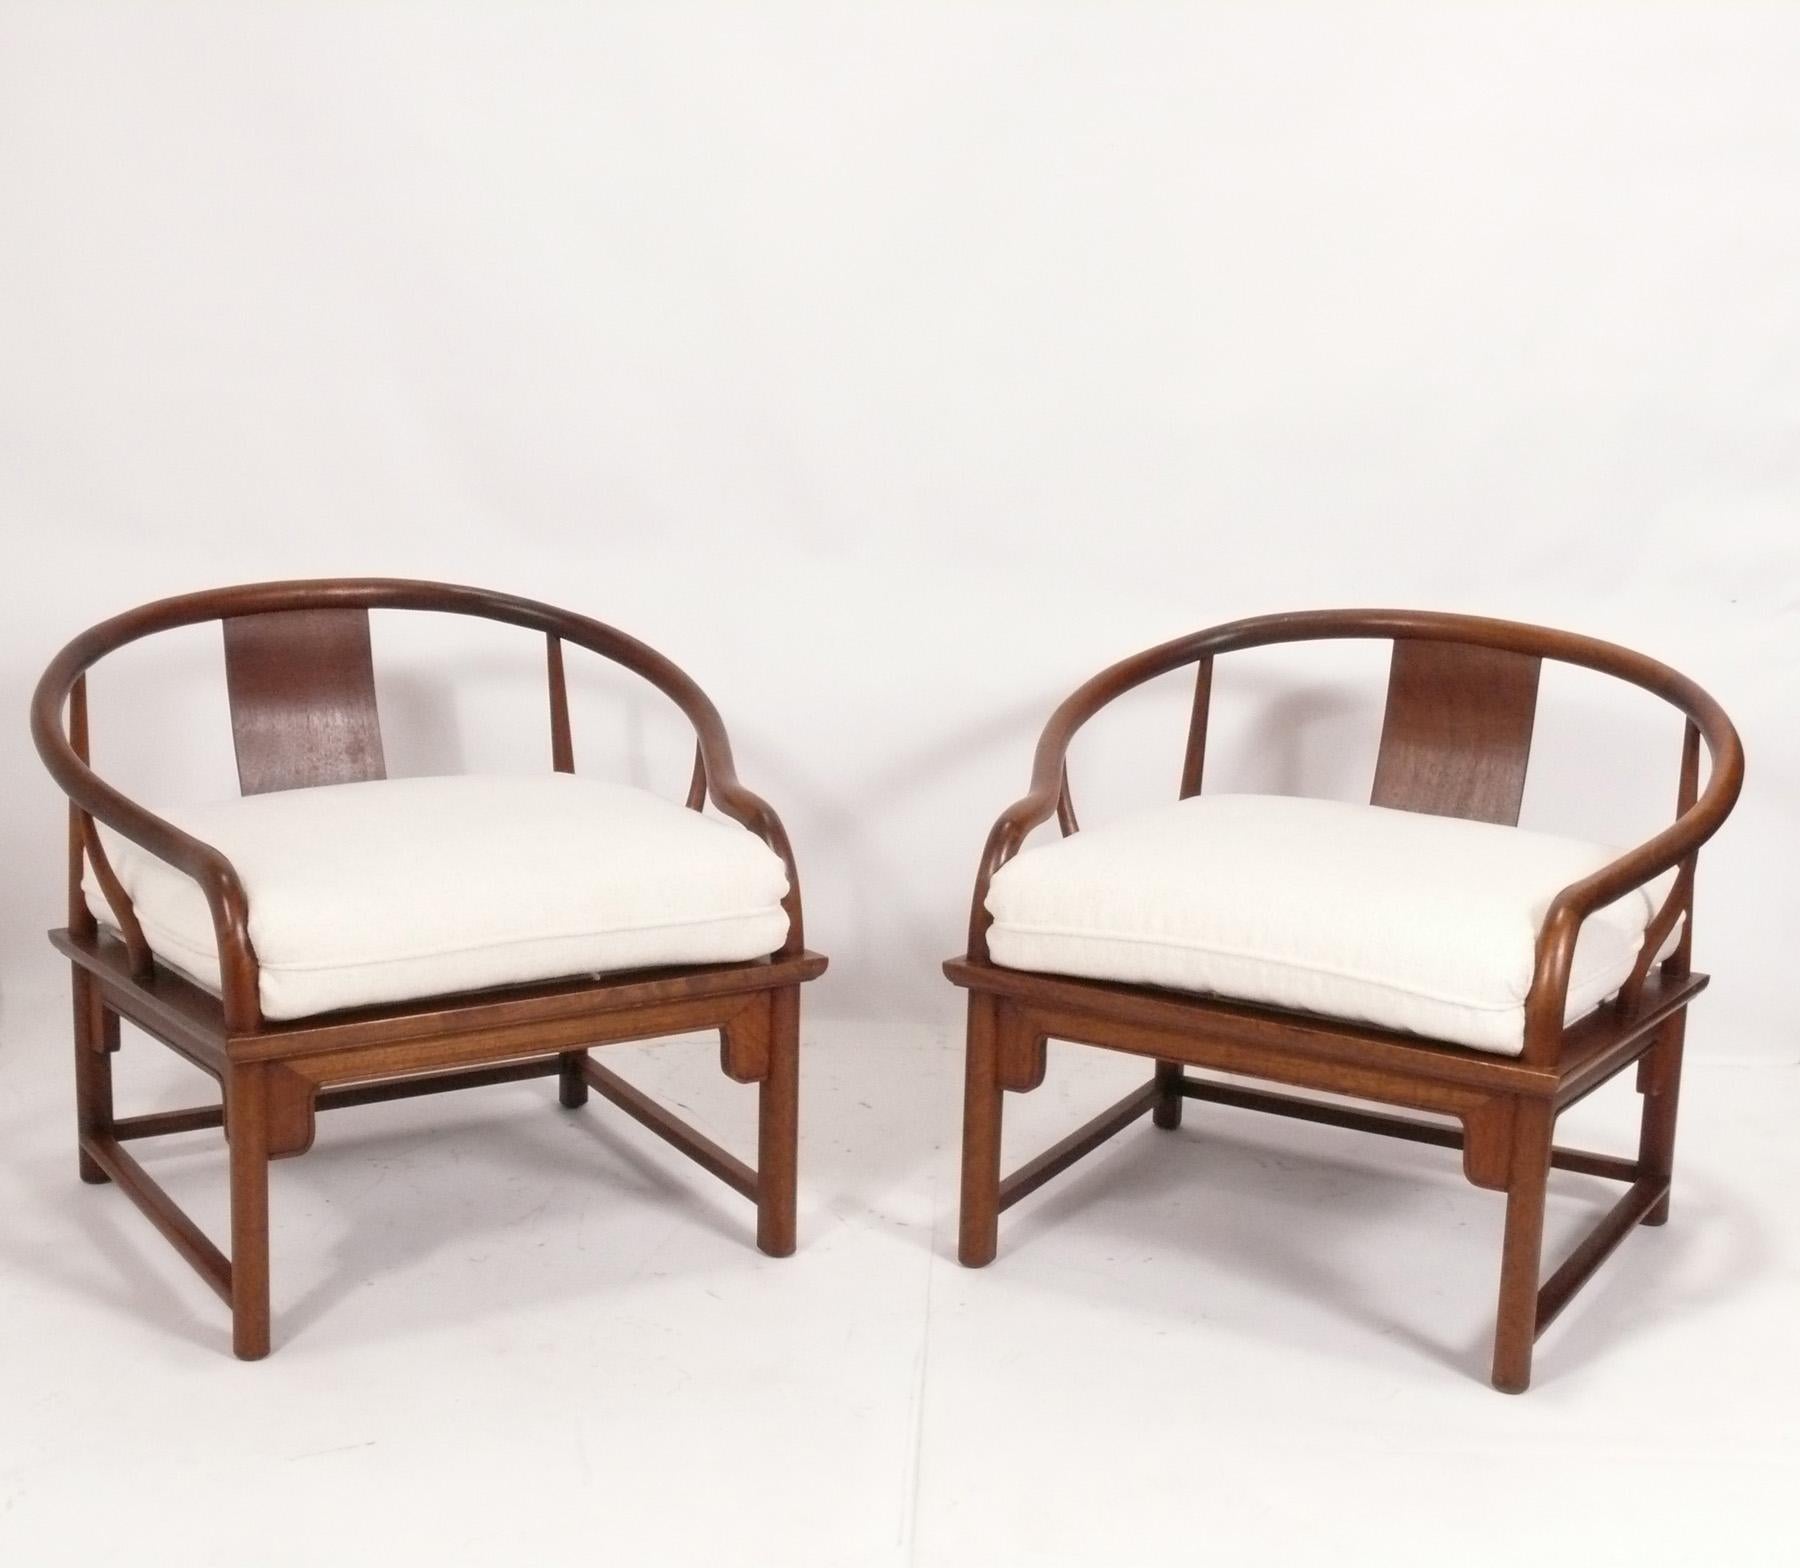 Curvaceous Pair of Asian Inspired Chairs, designed by Michael Taylor for Baker's Far East Line, American, circa 1960s. Signé avec l'étiquette de Baker en dessous. Ils ont été récemment retapissés dans un tissu bouclé de couleur ivoire. 